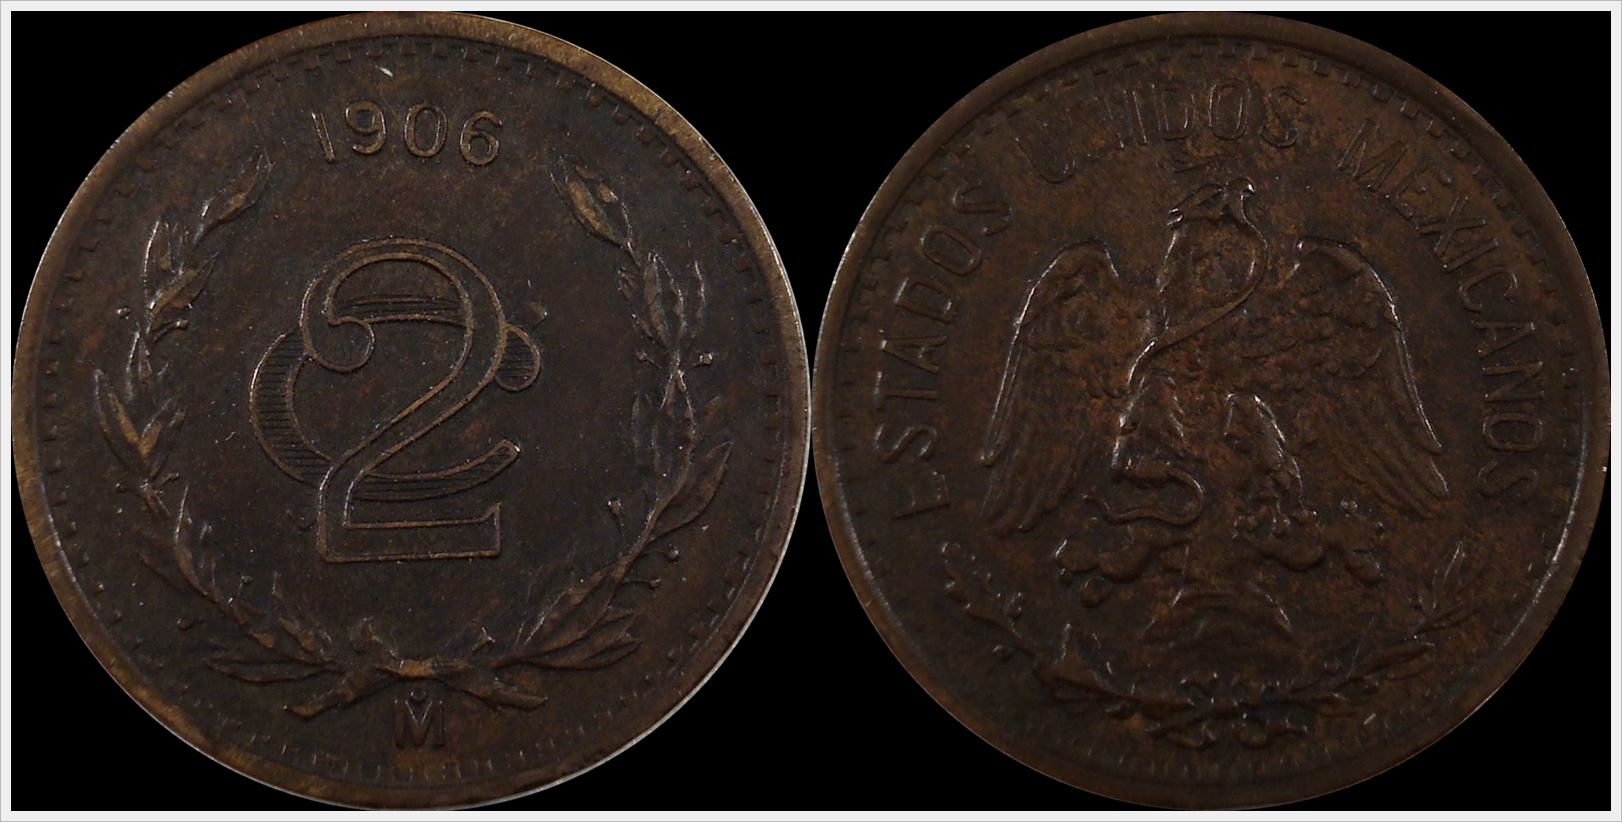 1906 Mexico 2 Centavos Narrow Date.jpg